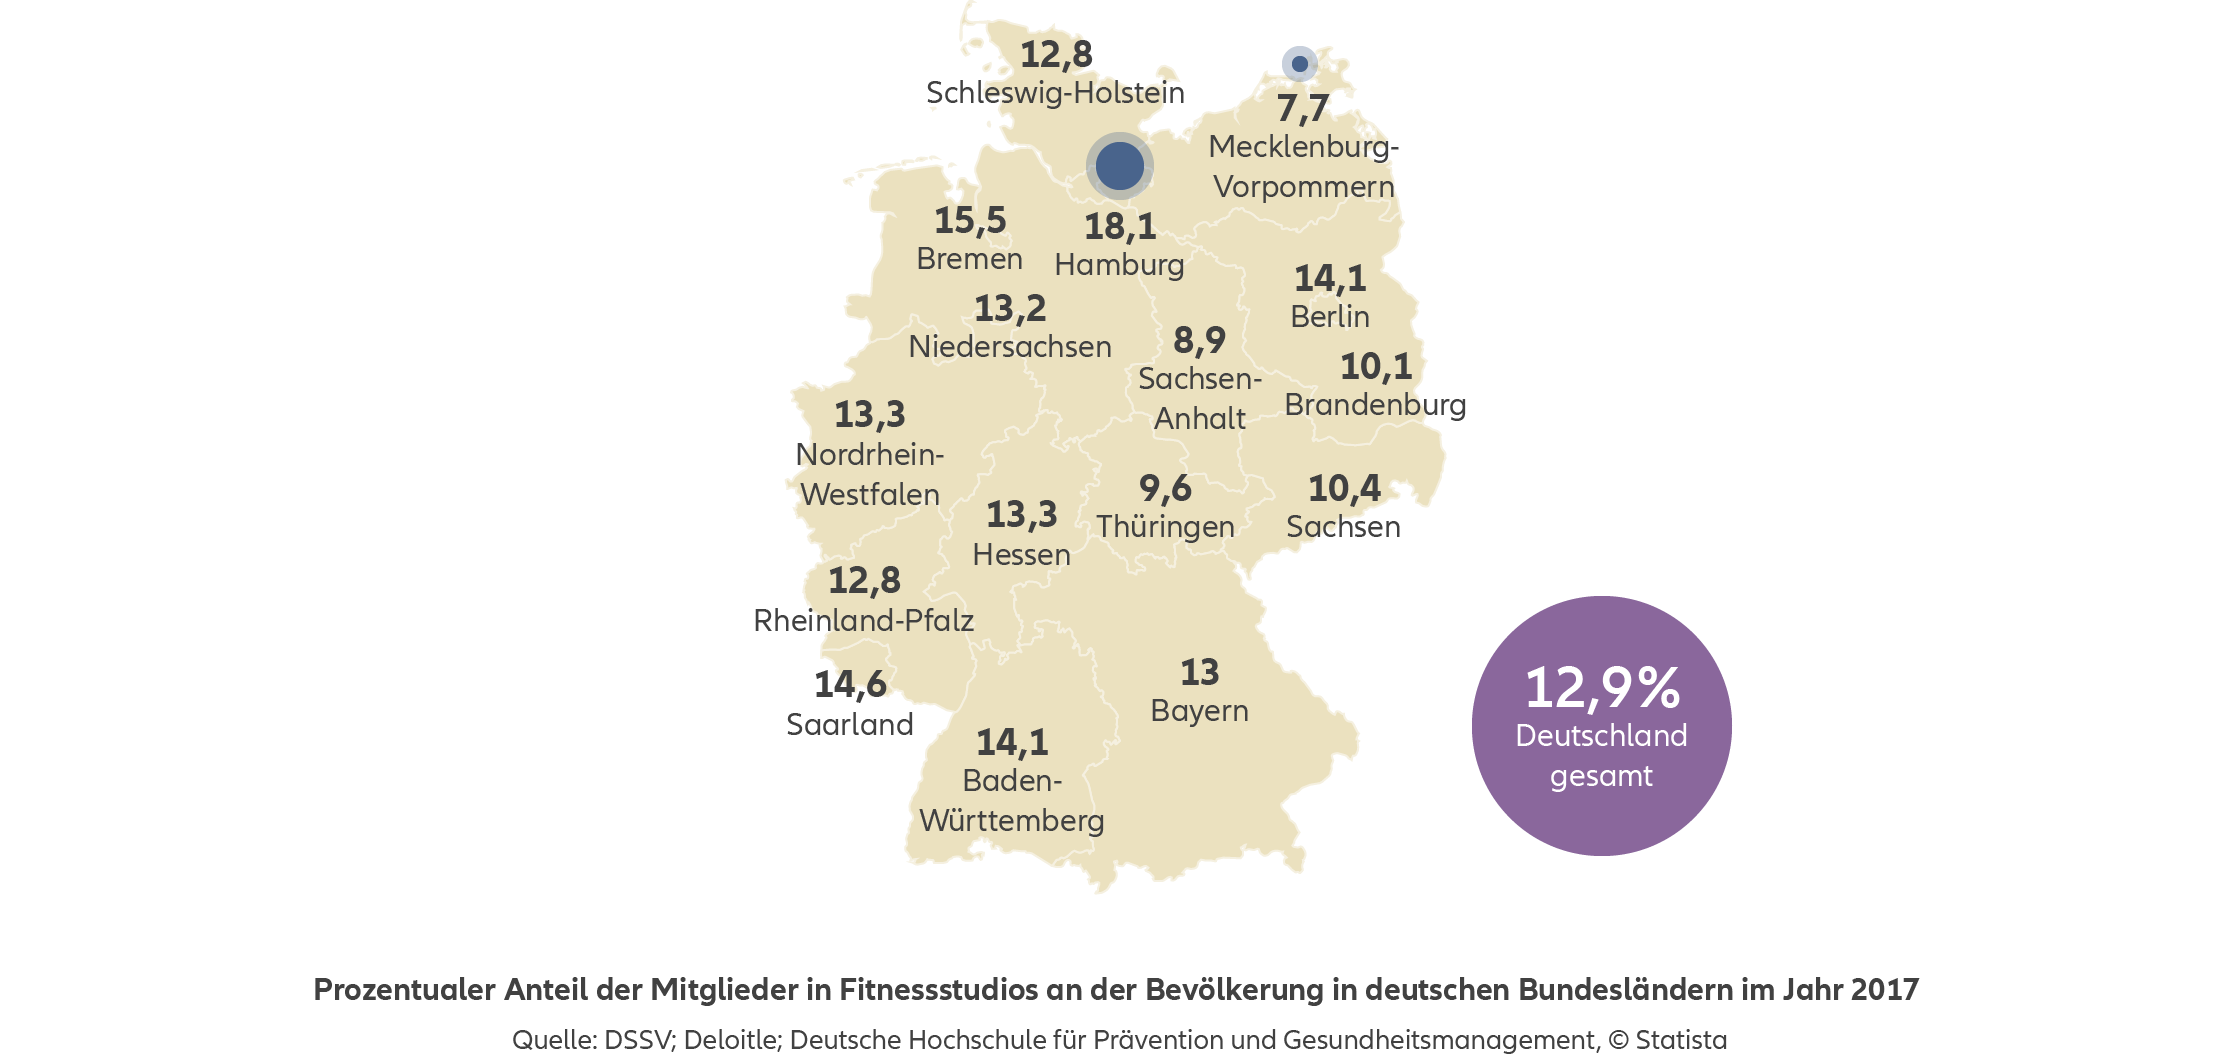 Allianz - Agentursuche Private Krankenversicherung Hamburg - Infografik: Prozentualer Anteil der Mitglieder in Fitnessstudios an der Bevölkerung in deutschen Bundesländern im Jahr 2017